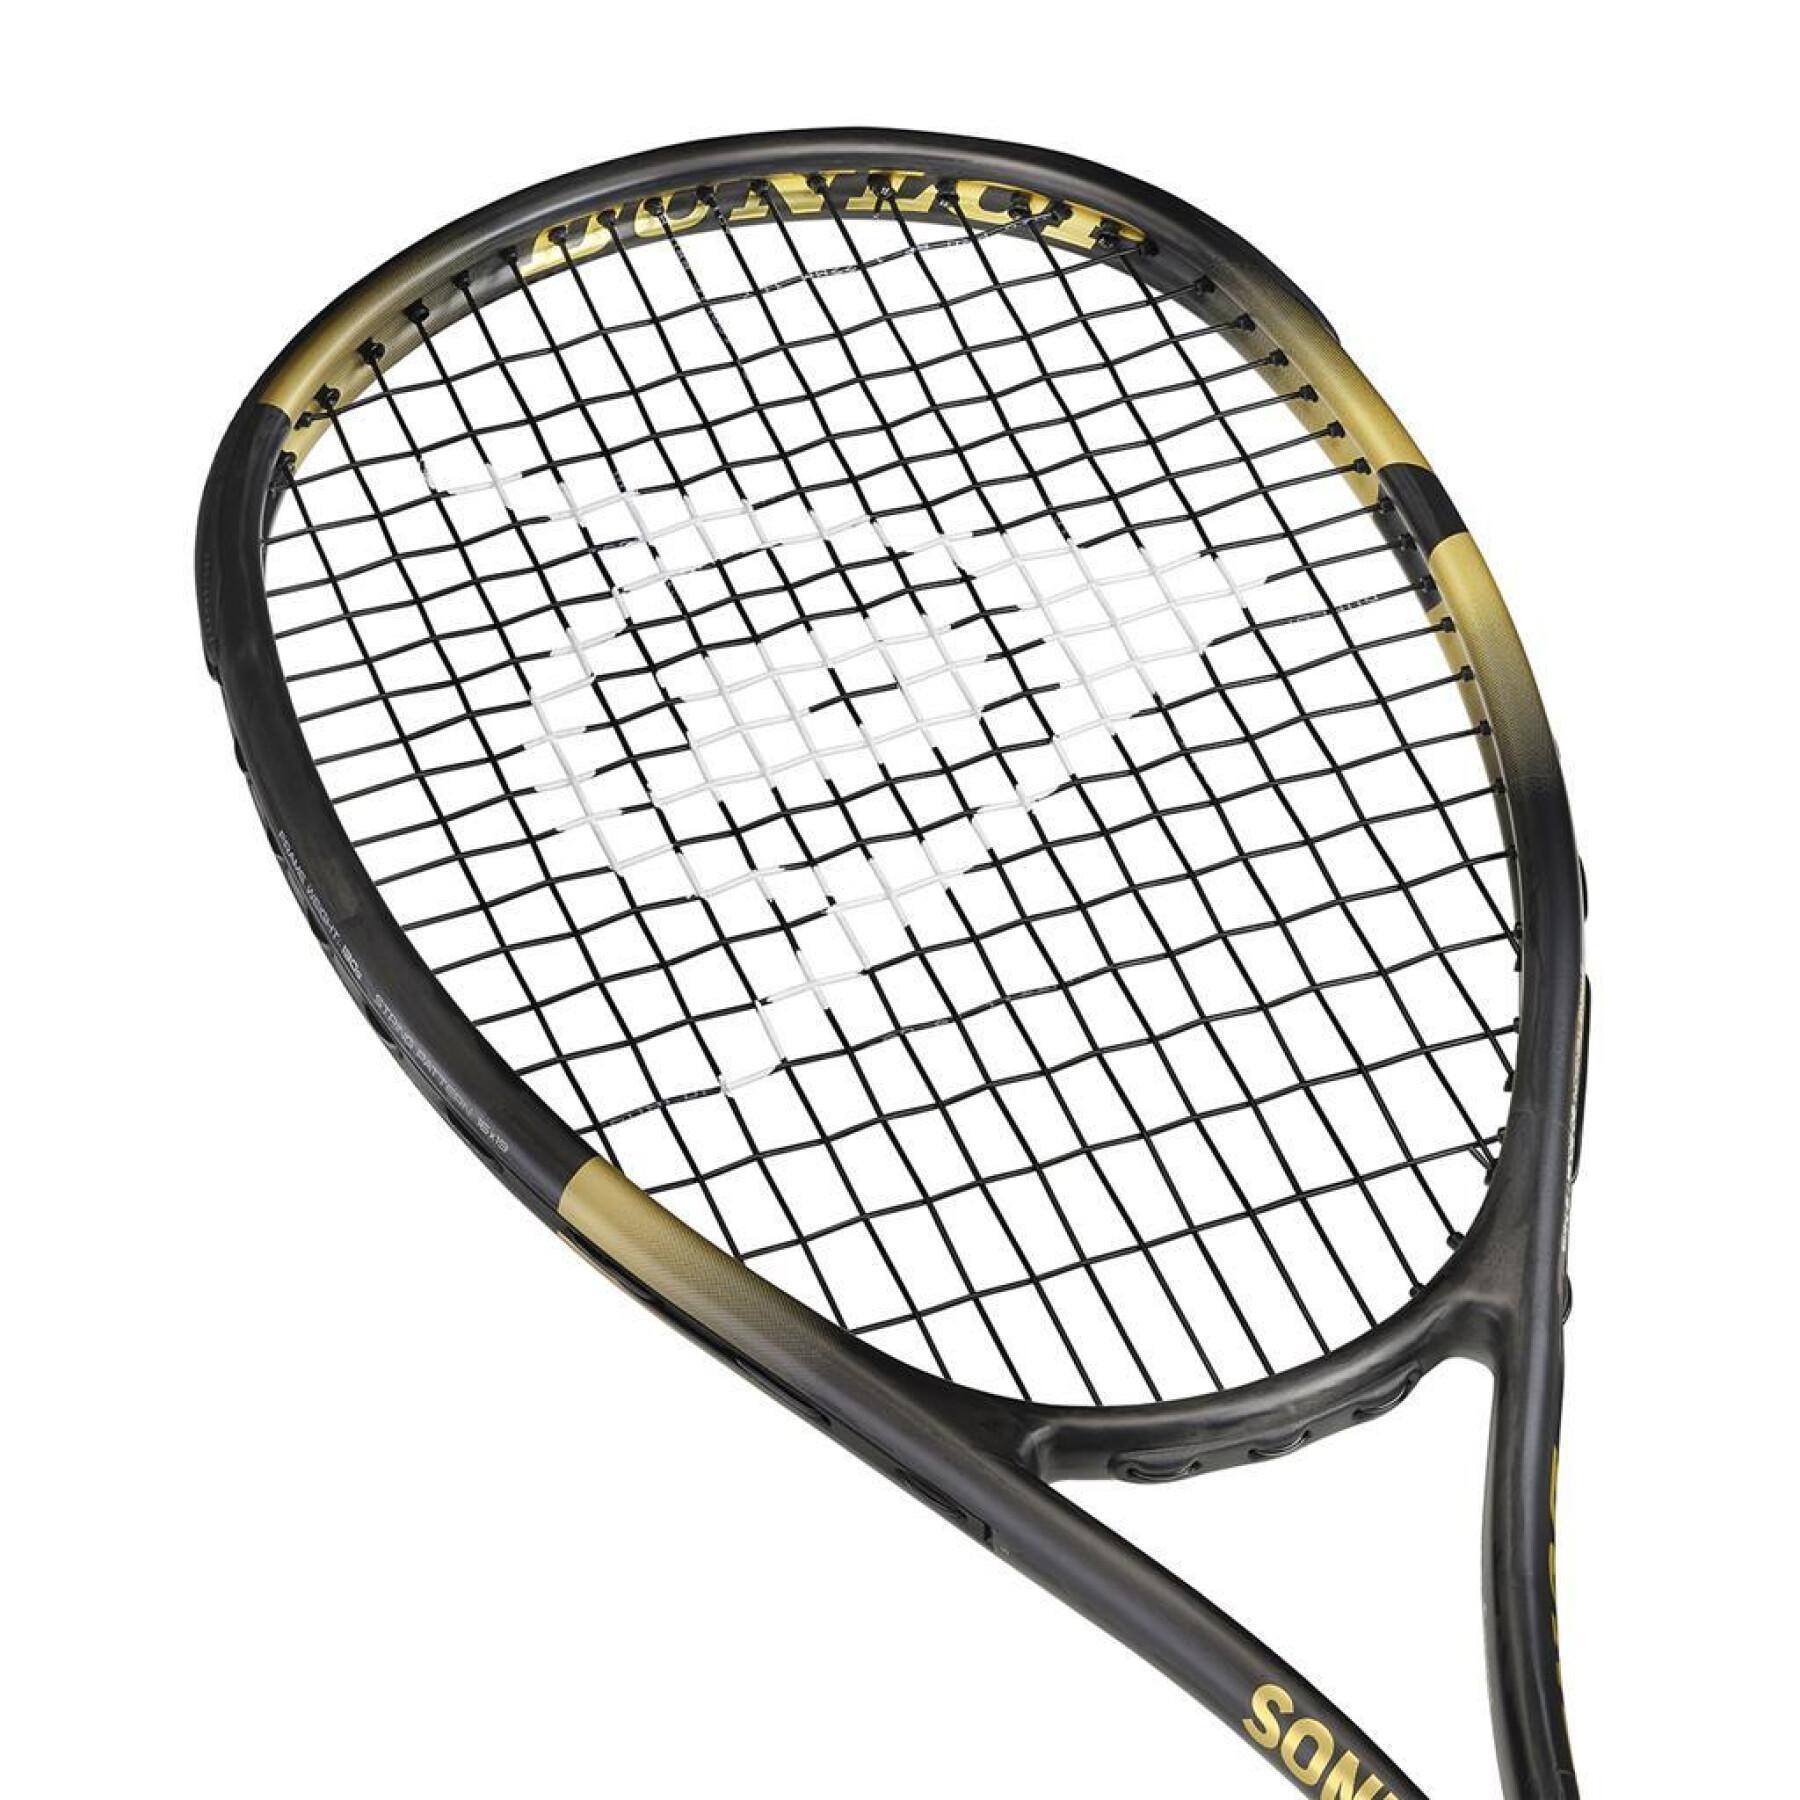 Raquete de squash Dunlop Soniccore Iconic 130